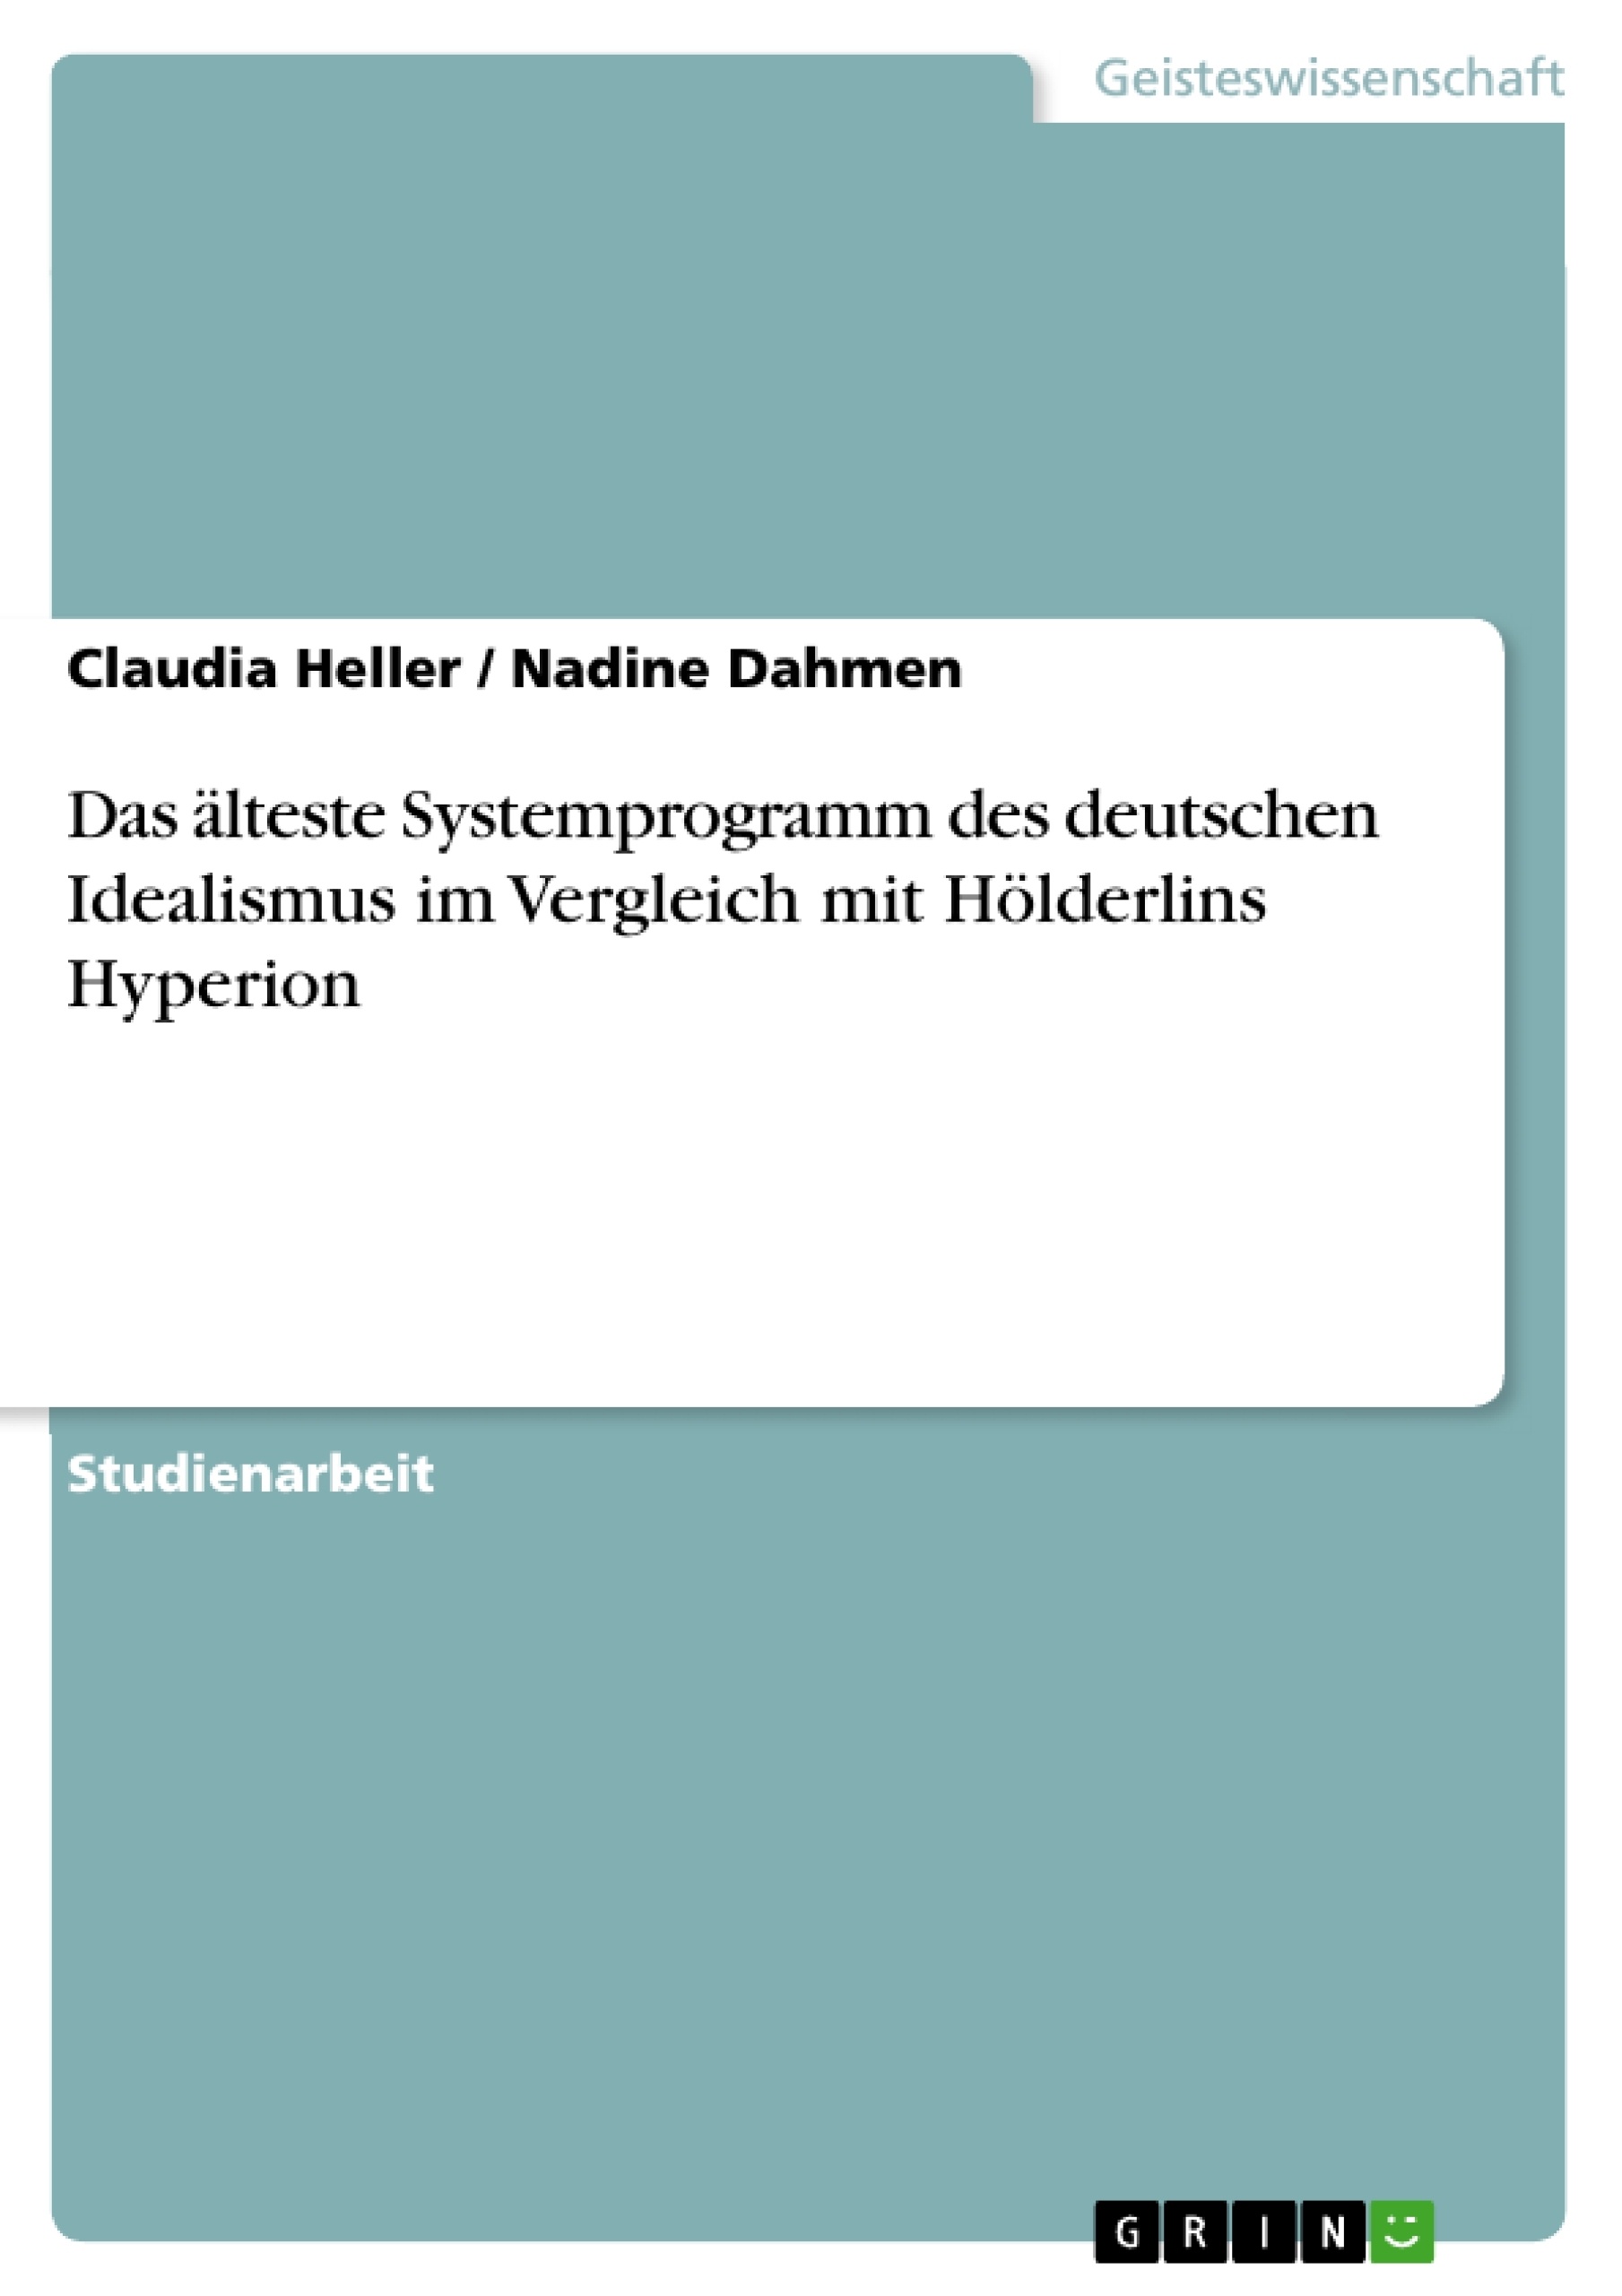 Title: Das älteste Systemprogramm des deutschen Idealismus im Vergleich mit Hölderlins Hyperion